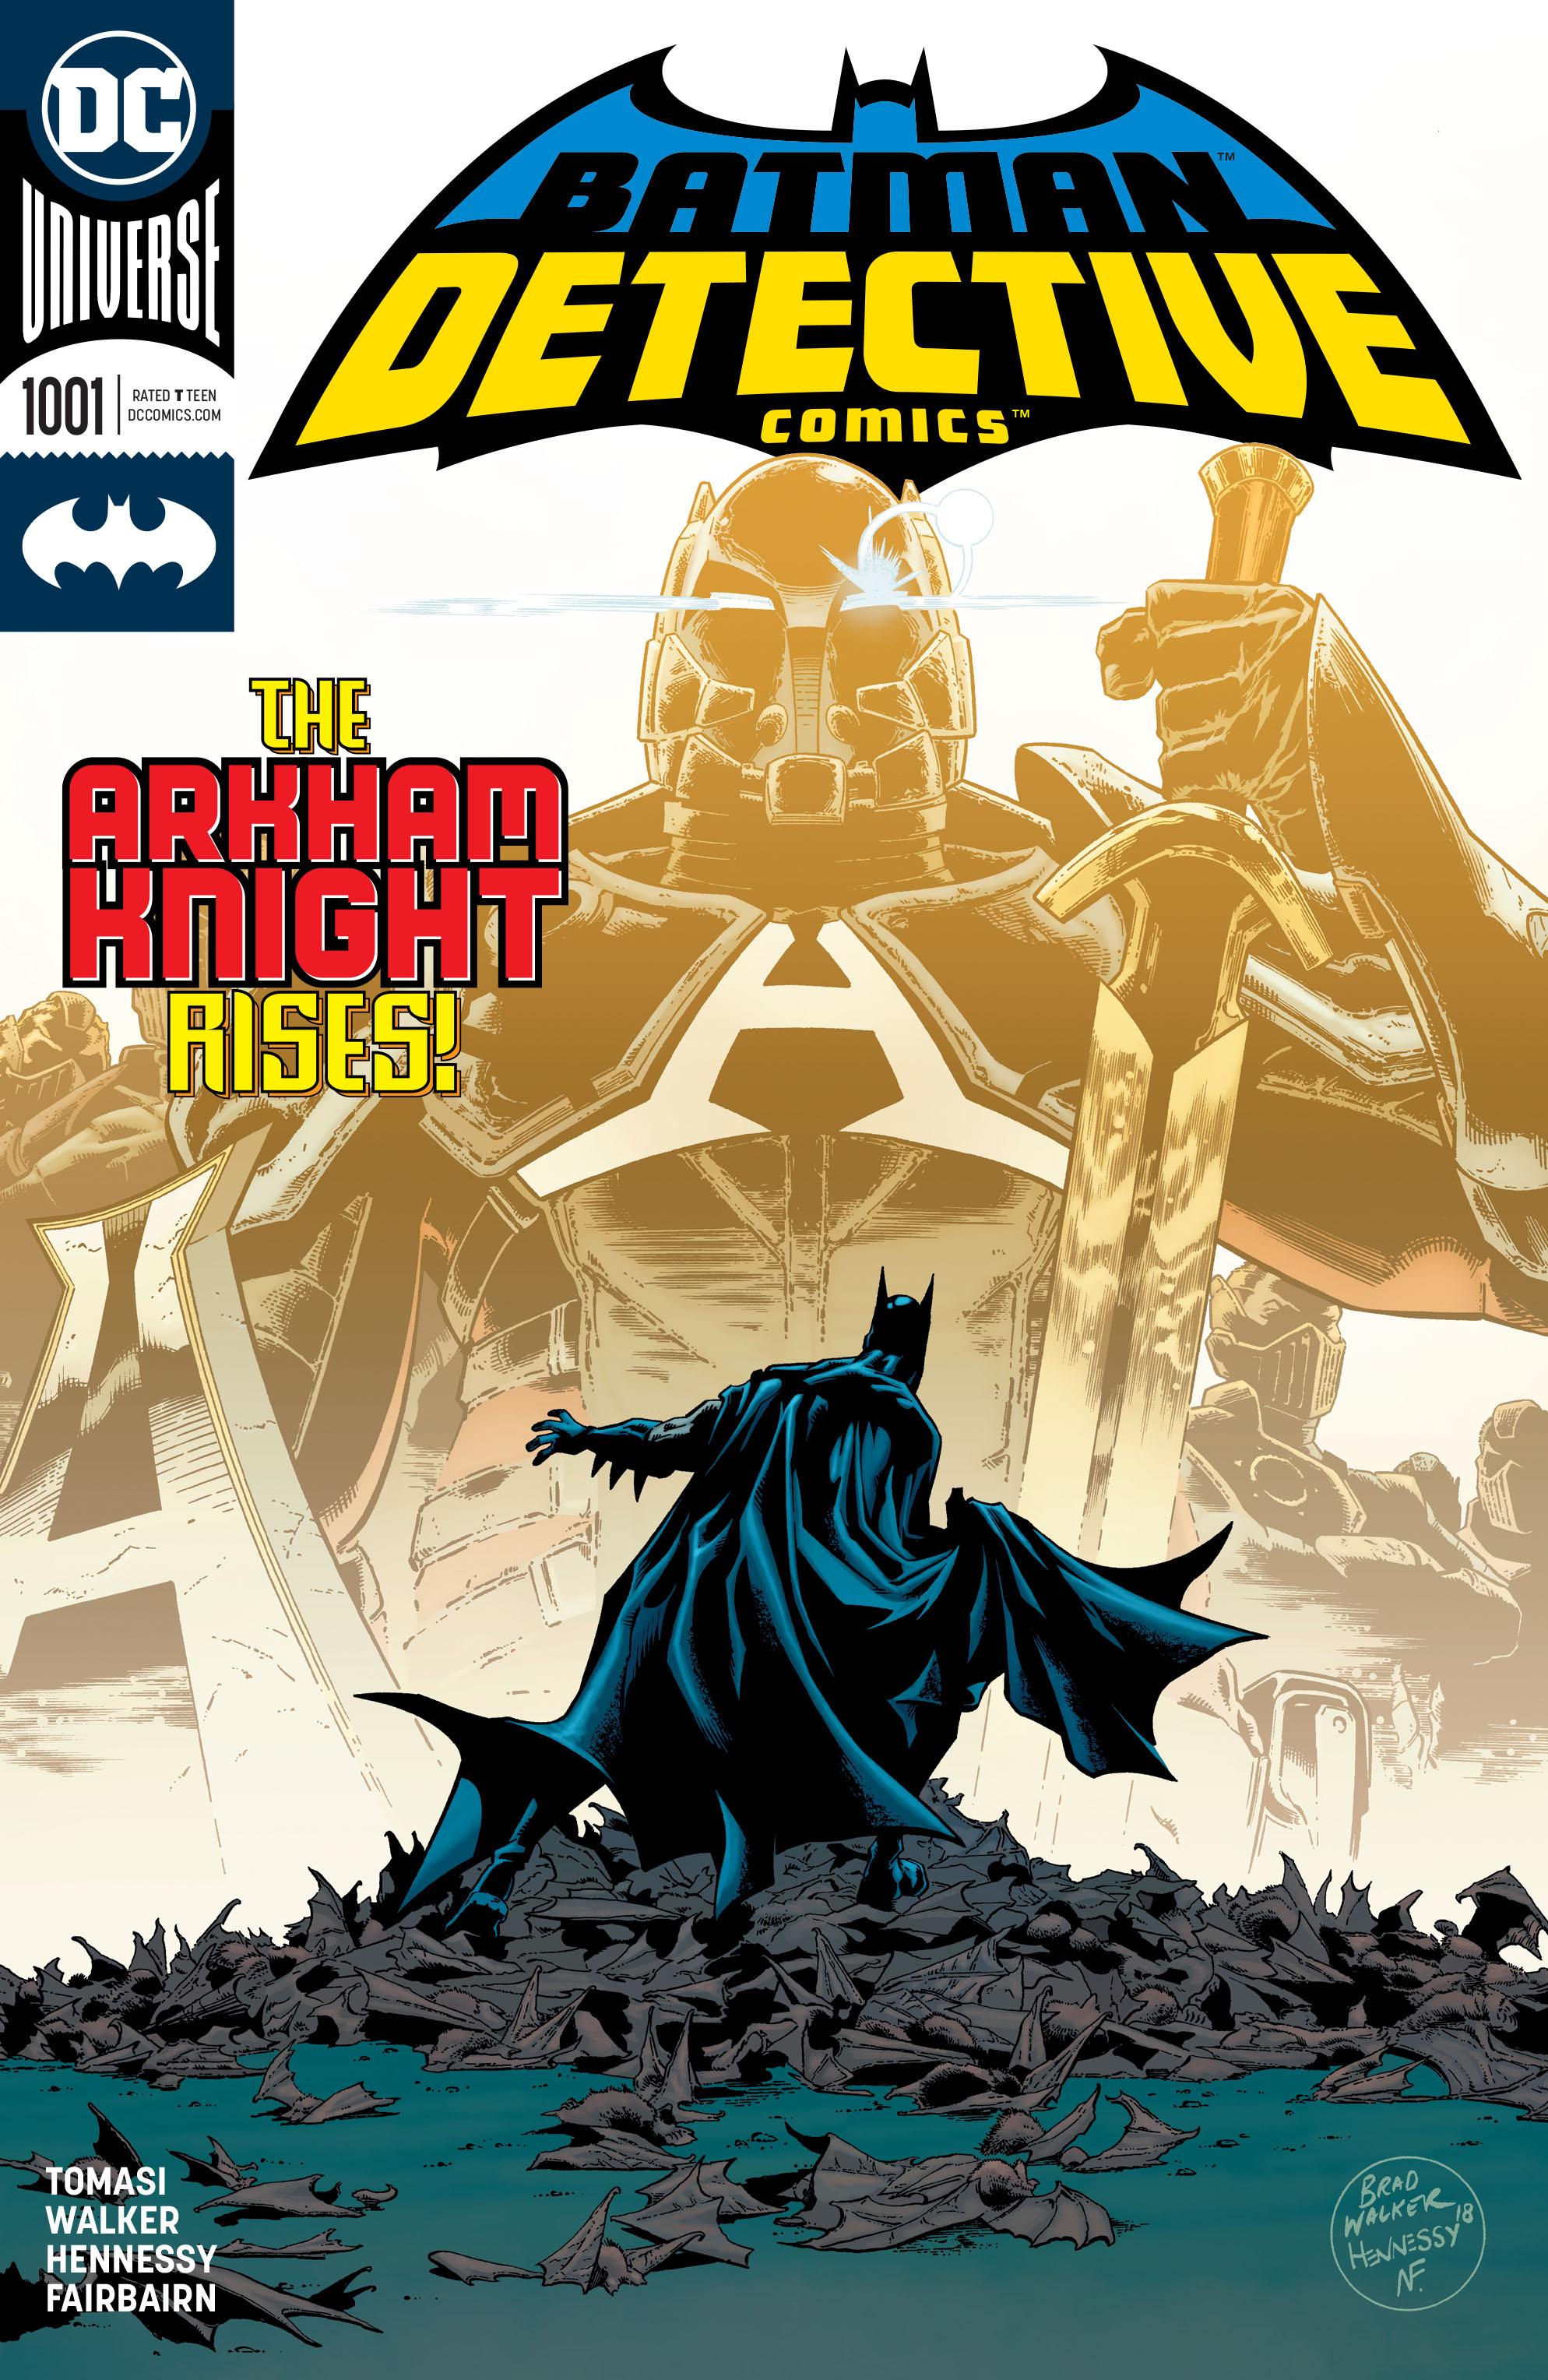 Detective Comics Vol. 1 #1001